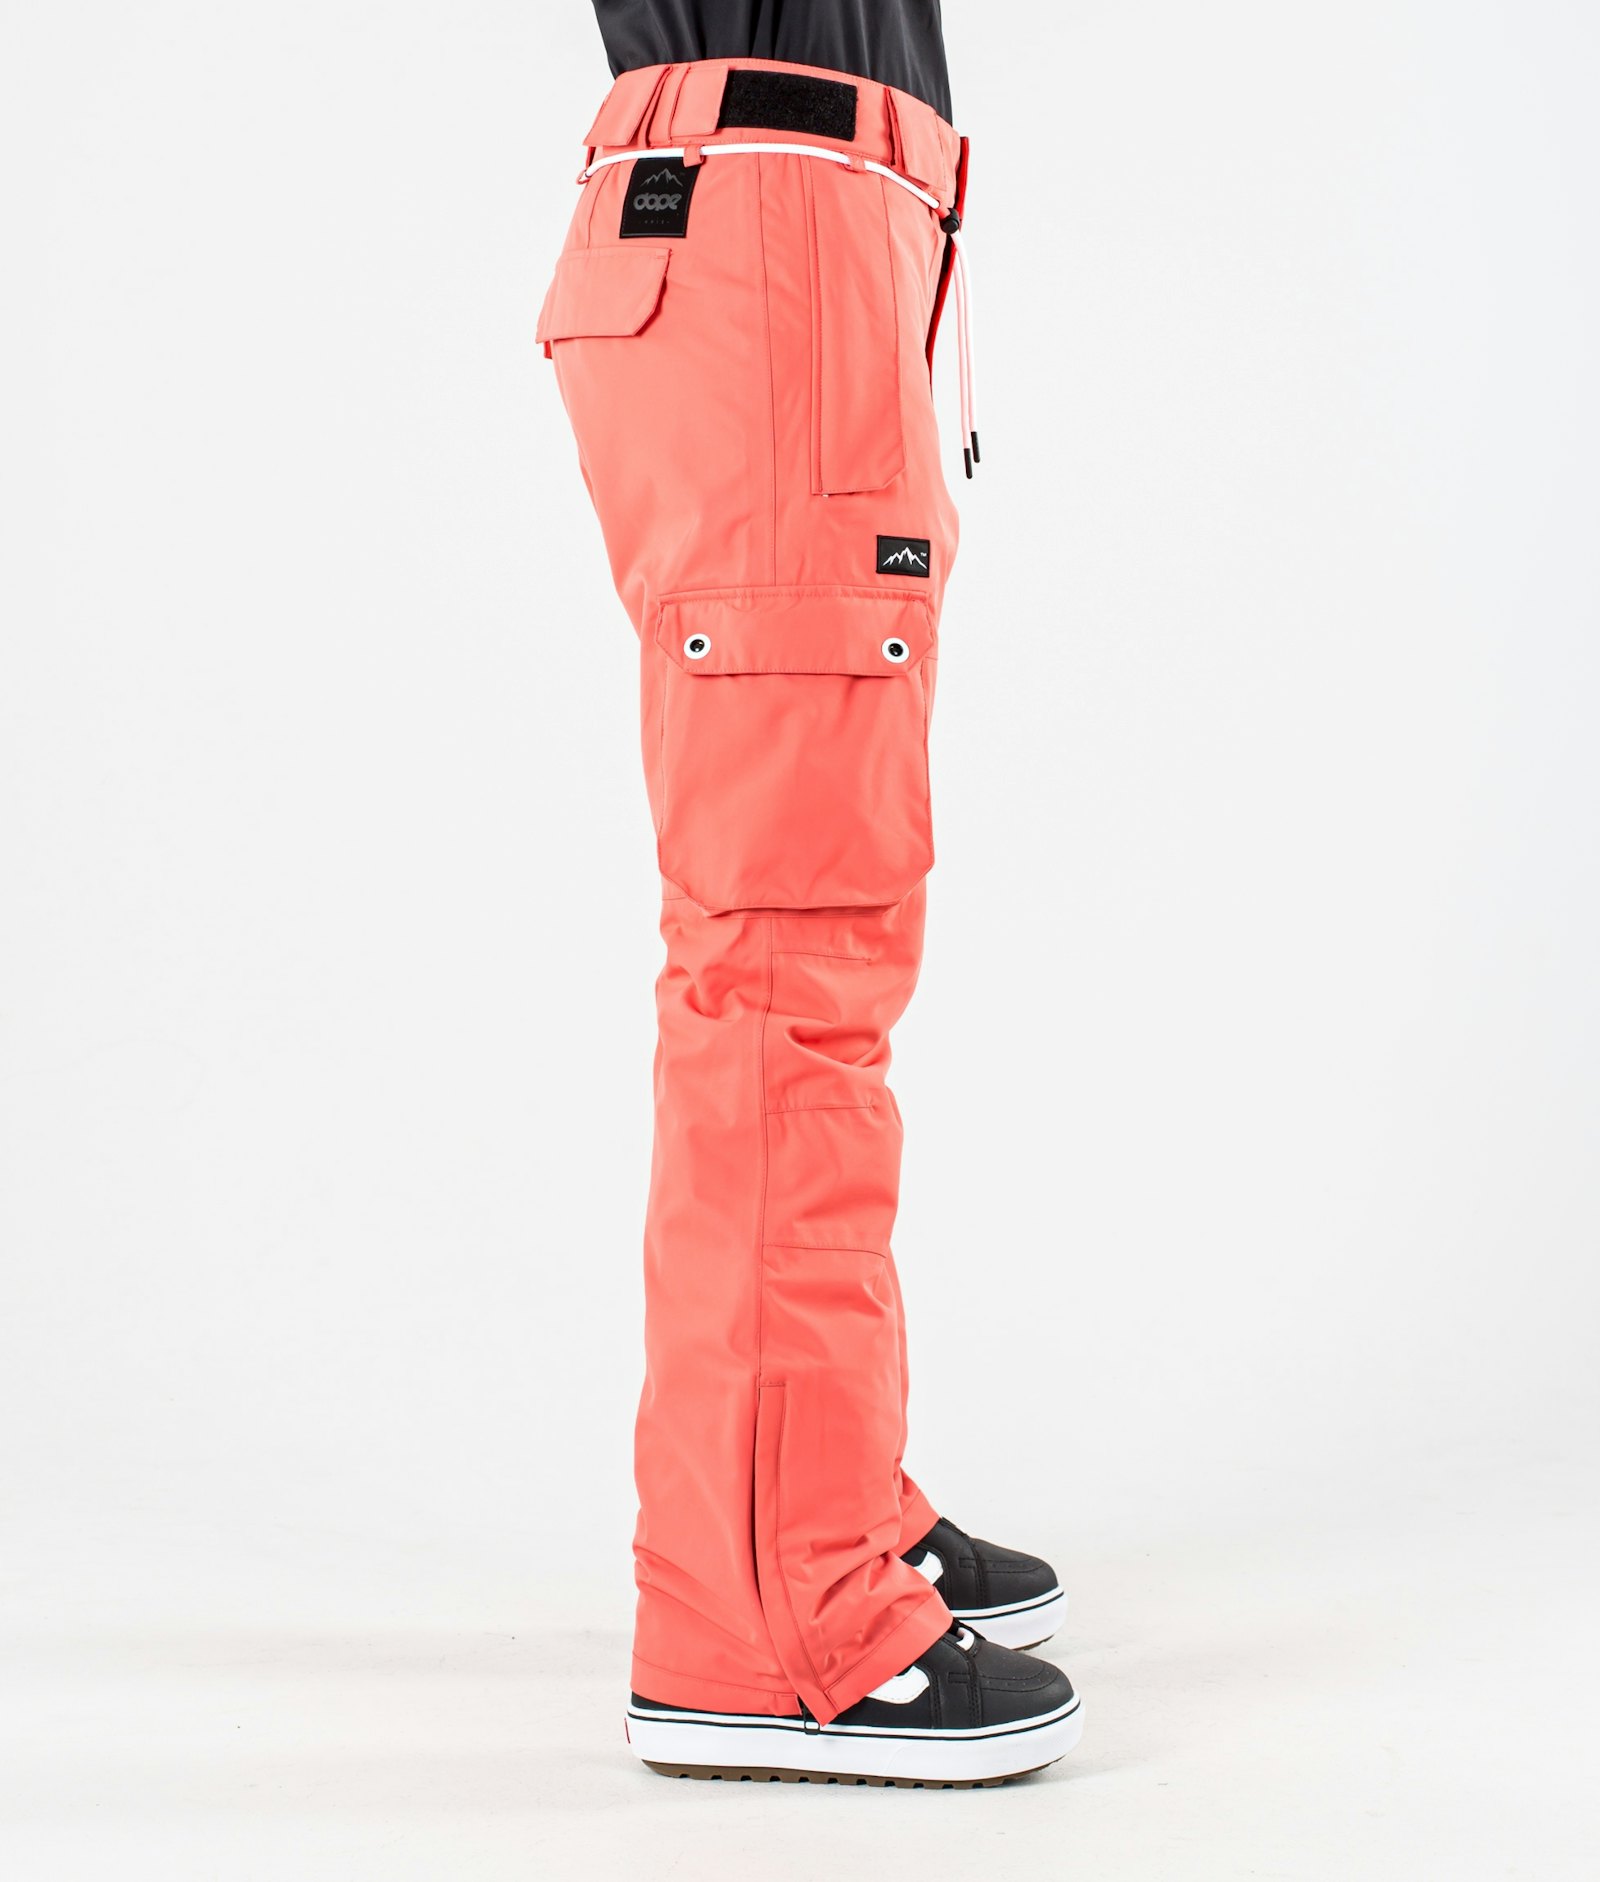 Dope Iconic W 2020 Pantalon de Snowboard Femme Coral